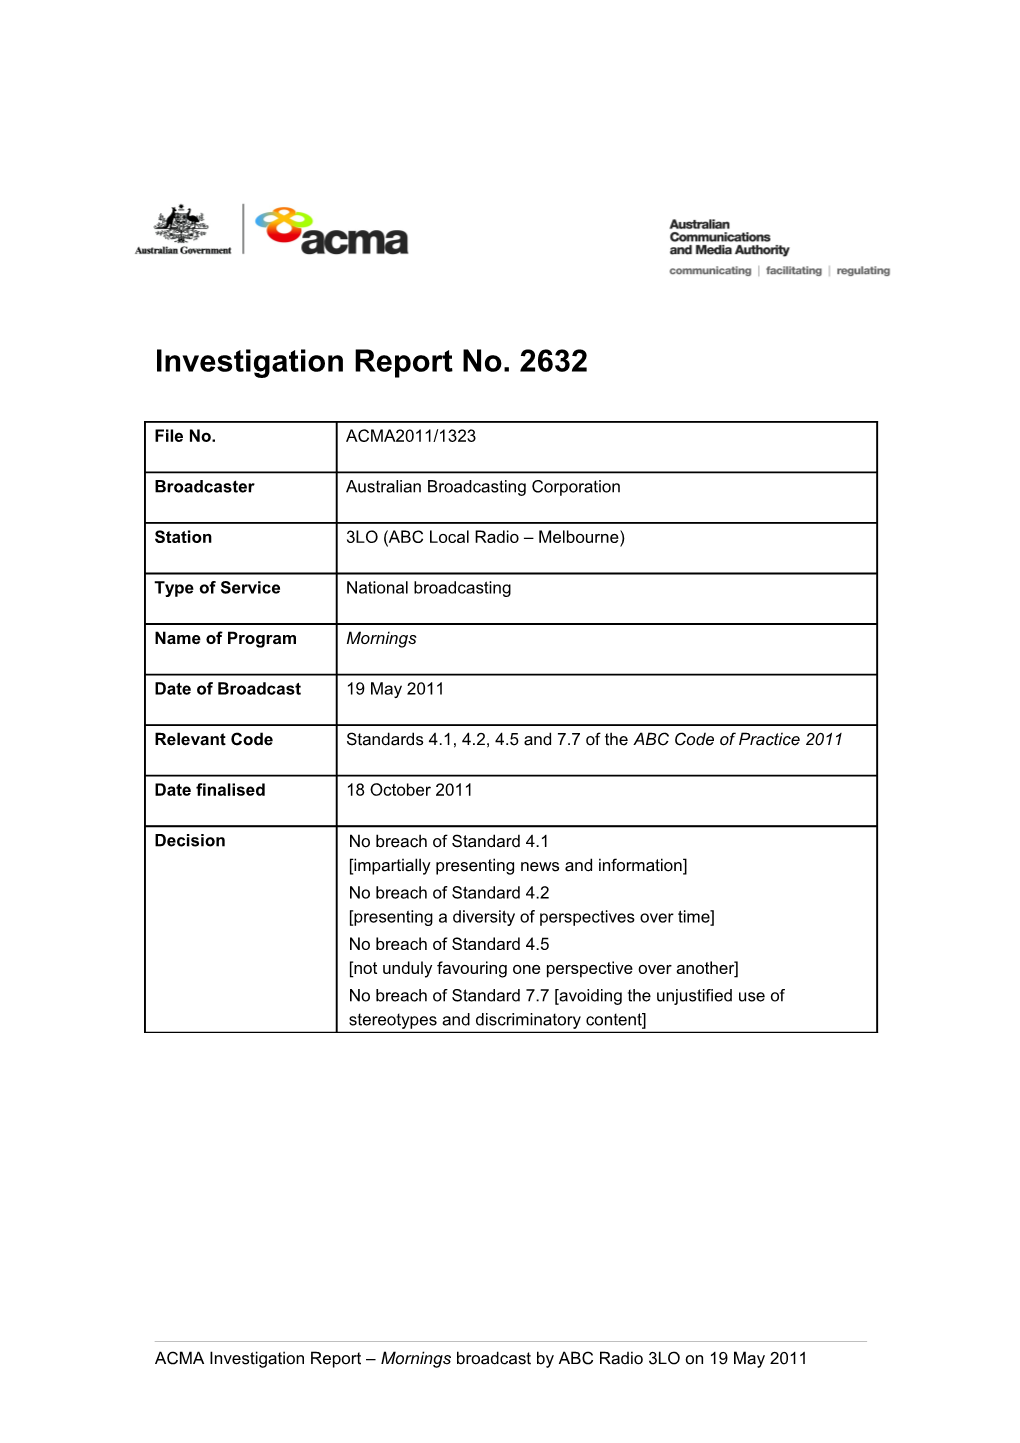 3LO - ACMA Investigation Report 2632